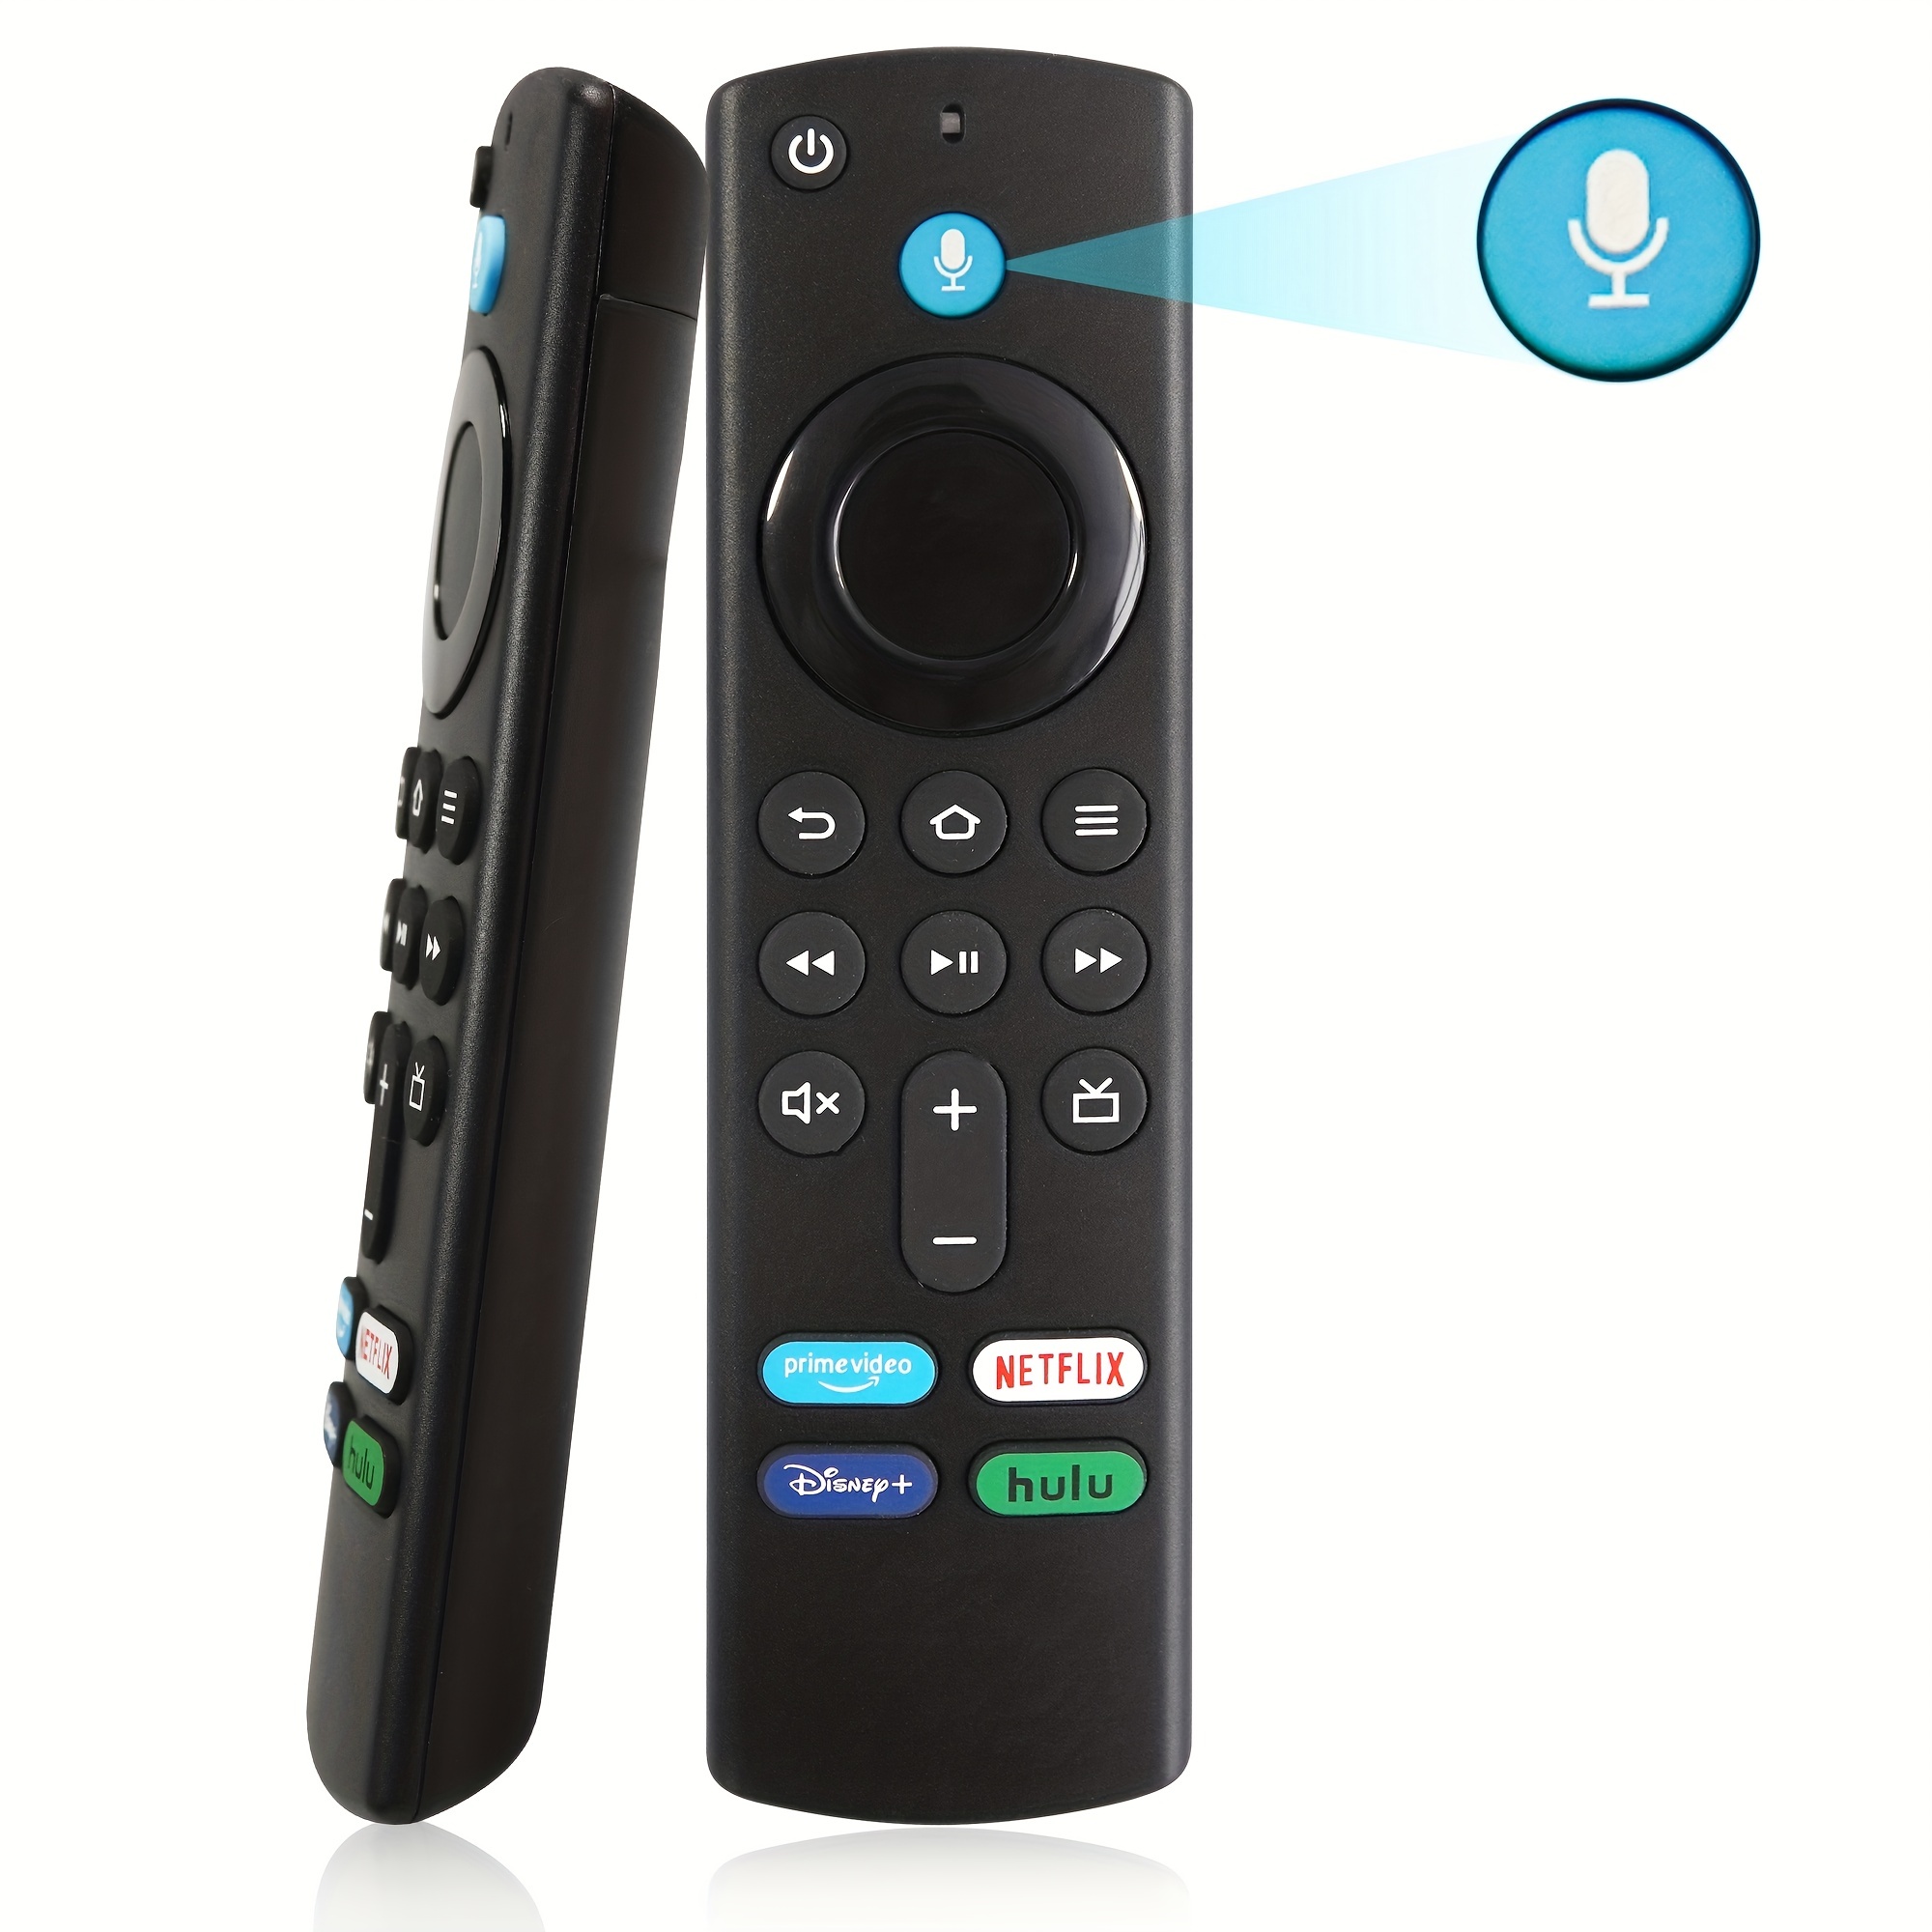 Mando A Distancia De Tv Interruptor remoto universal Control remoto  multifuncional para SONY SHARP SAMSUNG